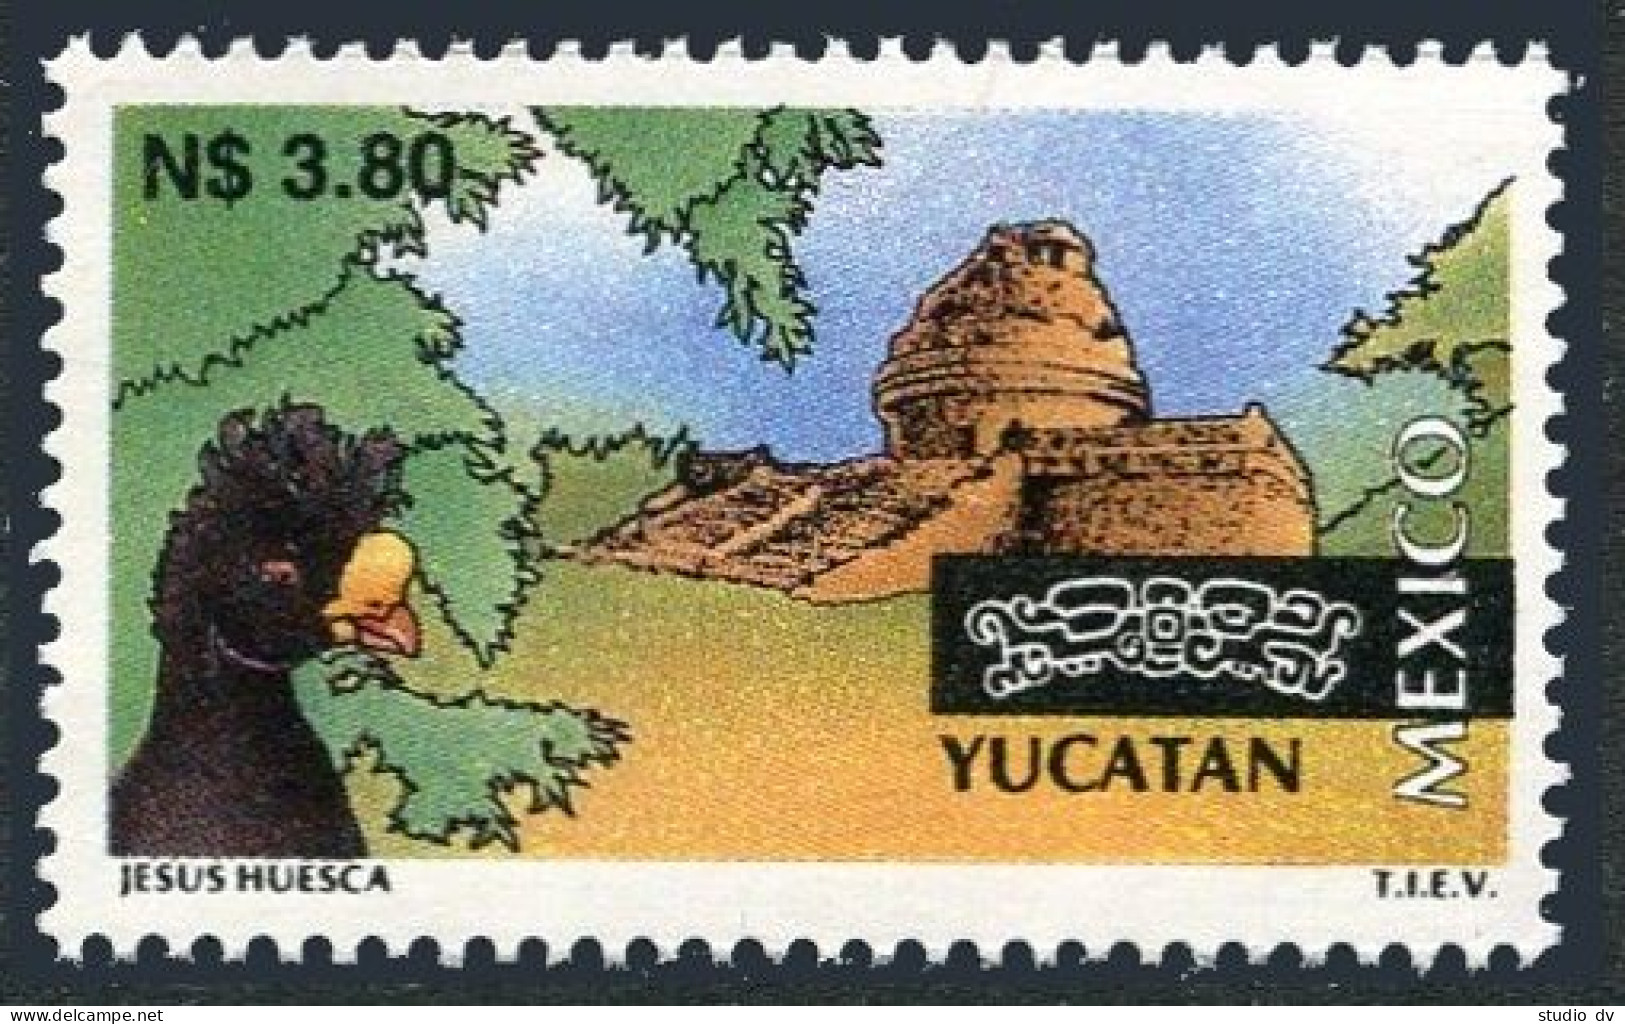 Mexico 1801, MNH. Michel 2496. Tourism 1995. Yucatan. Pyramid, Bird. - Mexico